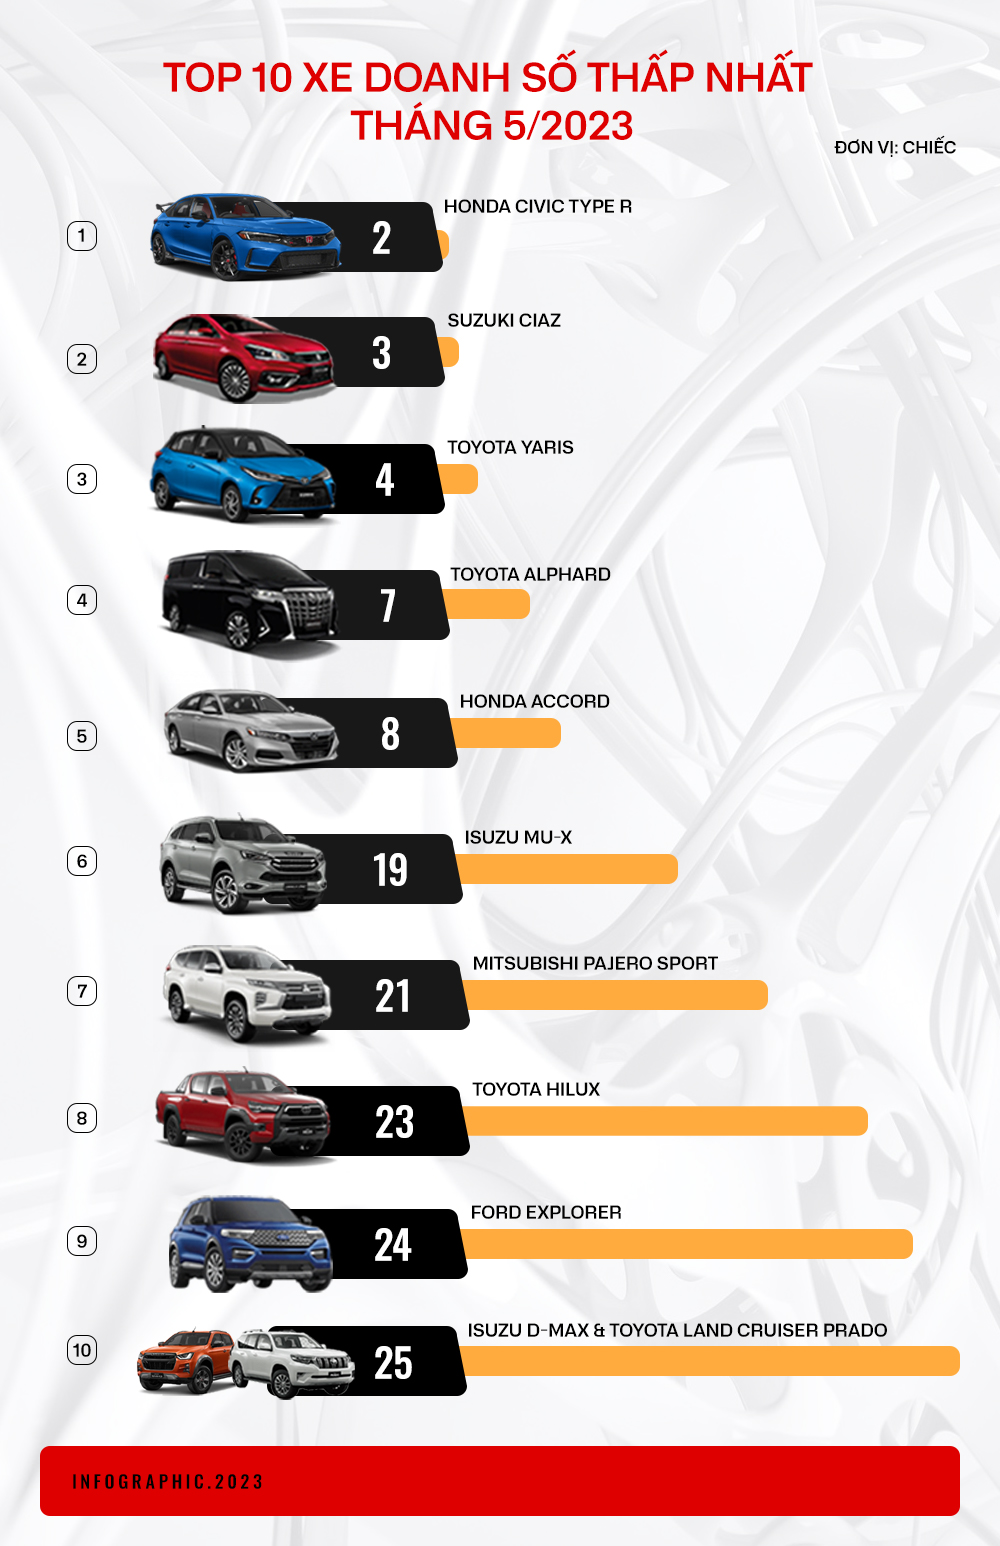 Đây là 10 xe bán ít nhất tháng 5: Civic Type R chỉ bán được 2 chiếc dù khách hàng tranh nhau mua - Ảnh 1.